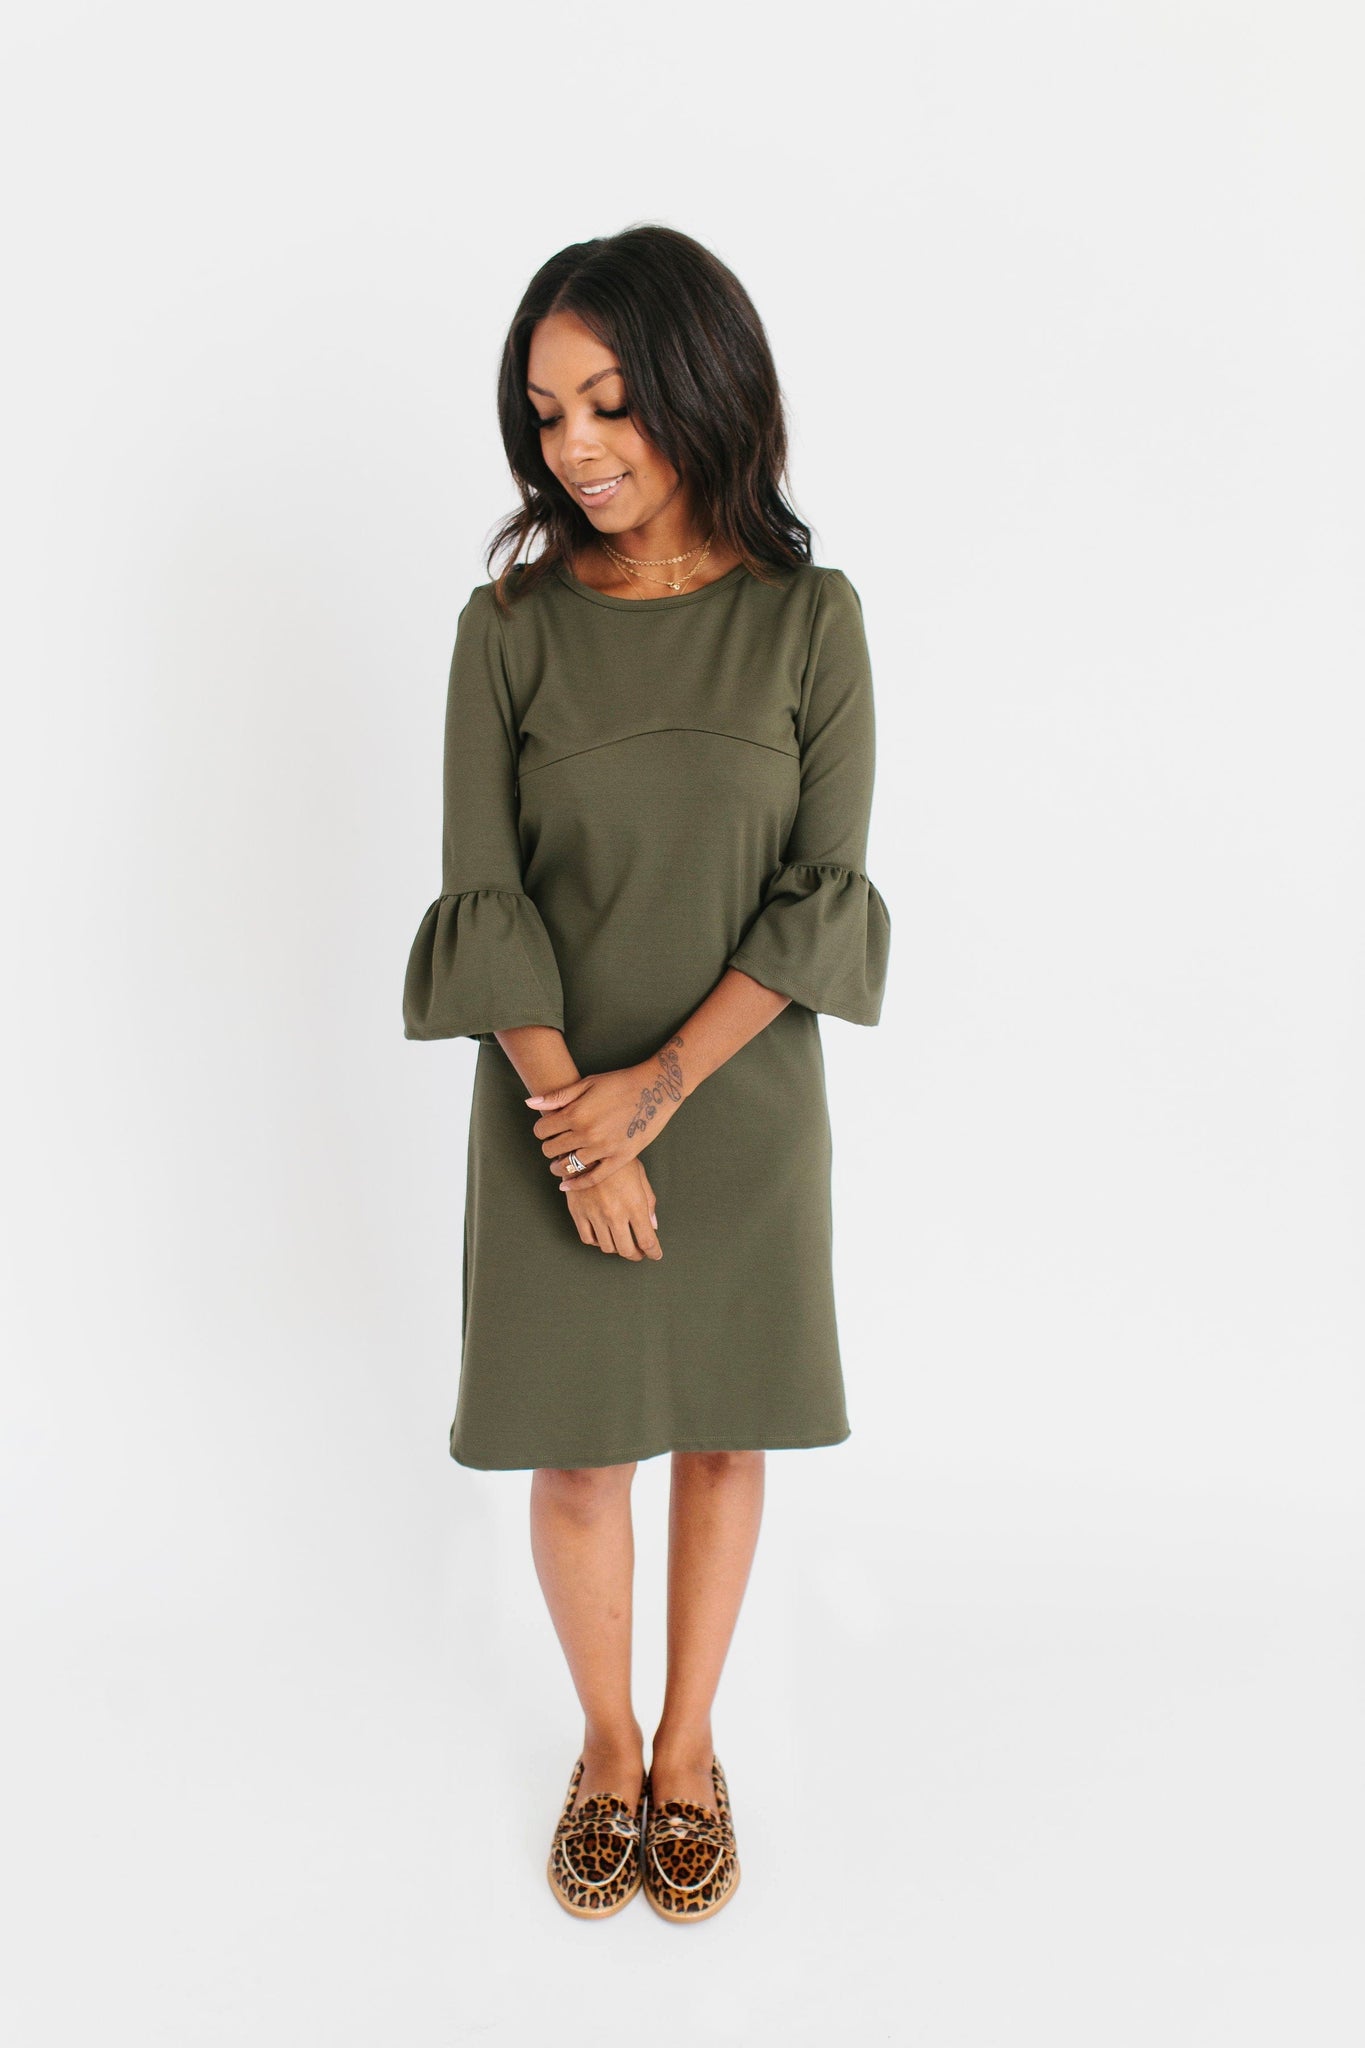 Olive - Harper & Bay Bell Sleeve Nursing Dress